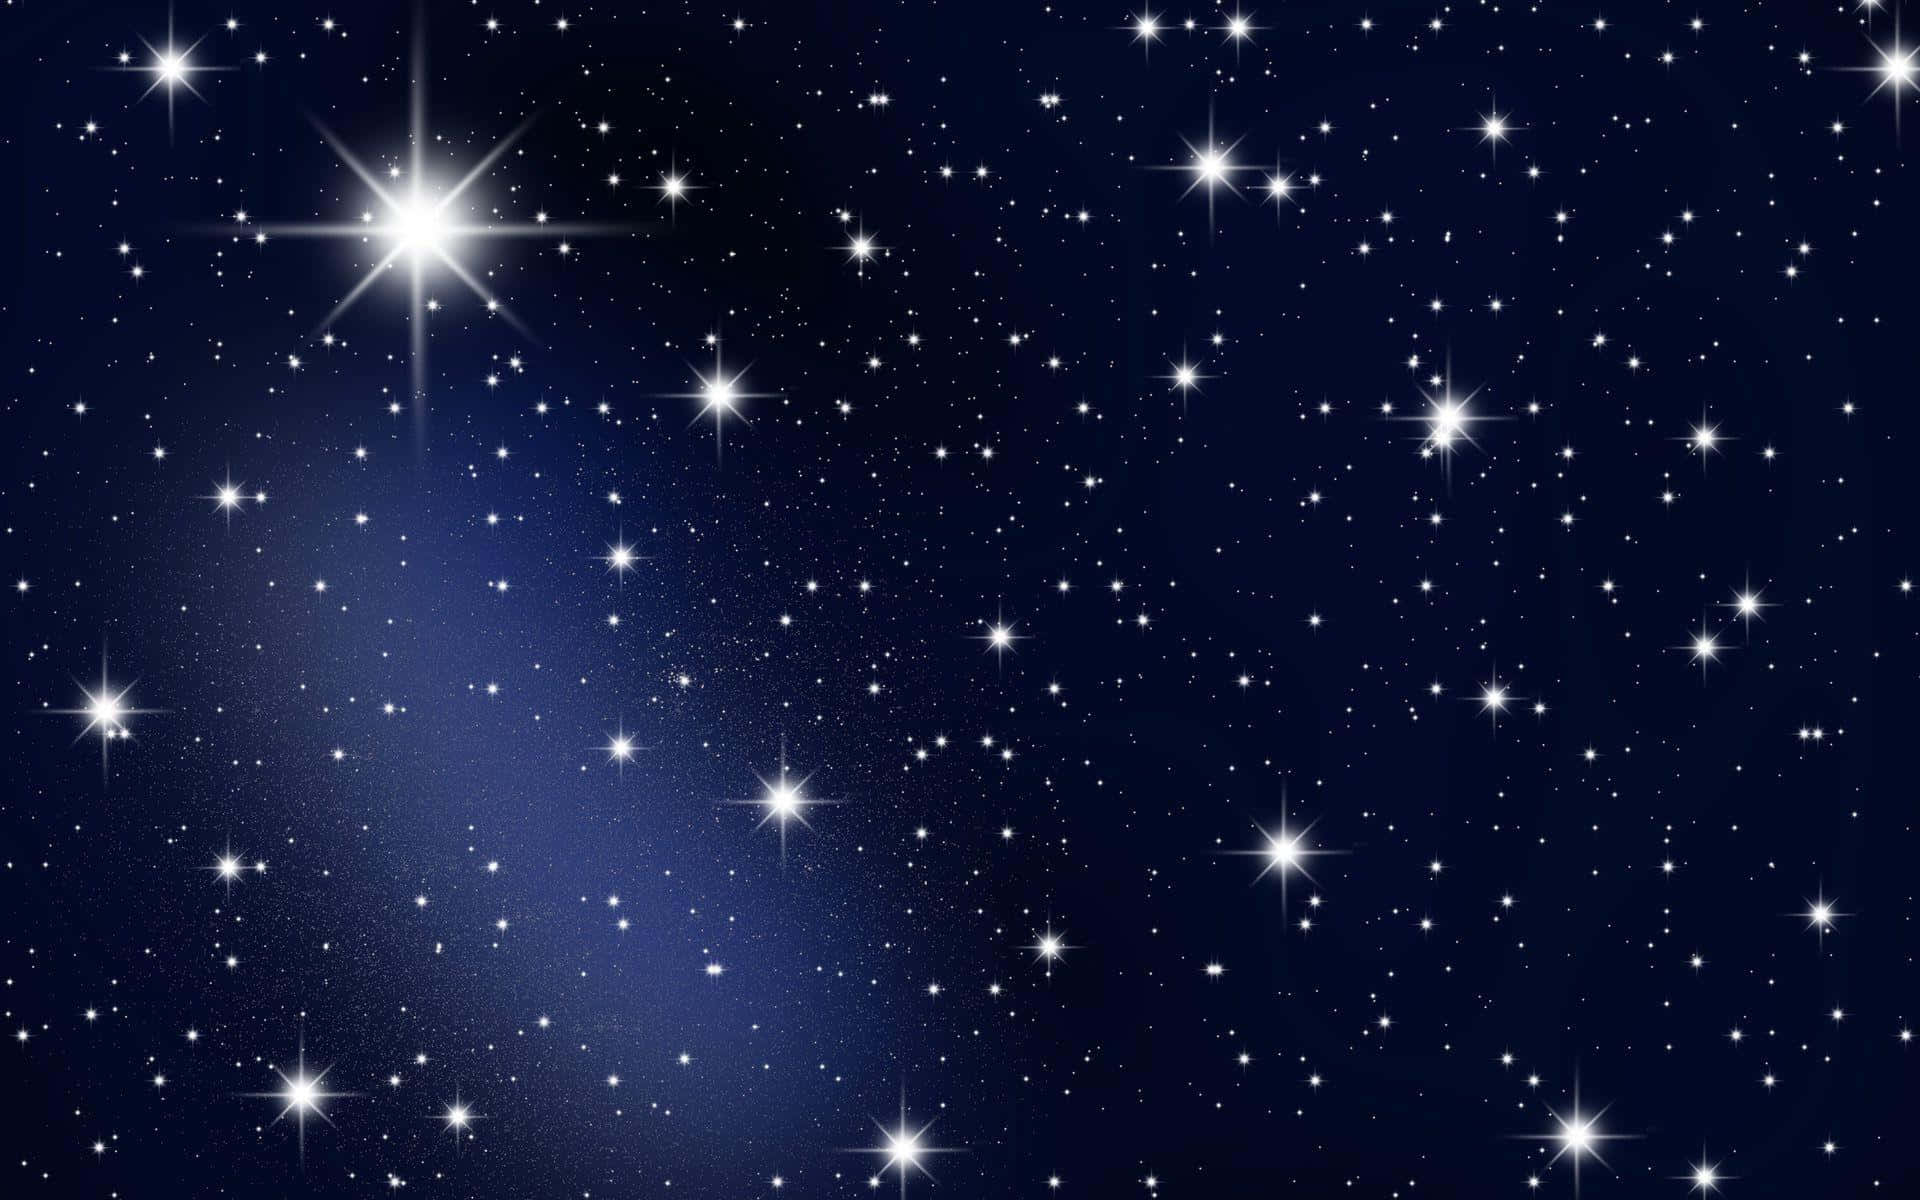 Cielonocturno Lleno De Estrellas